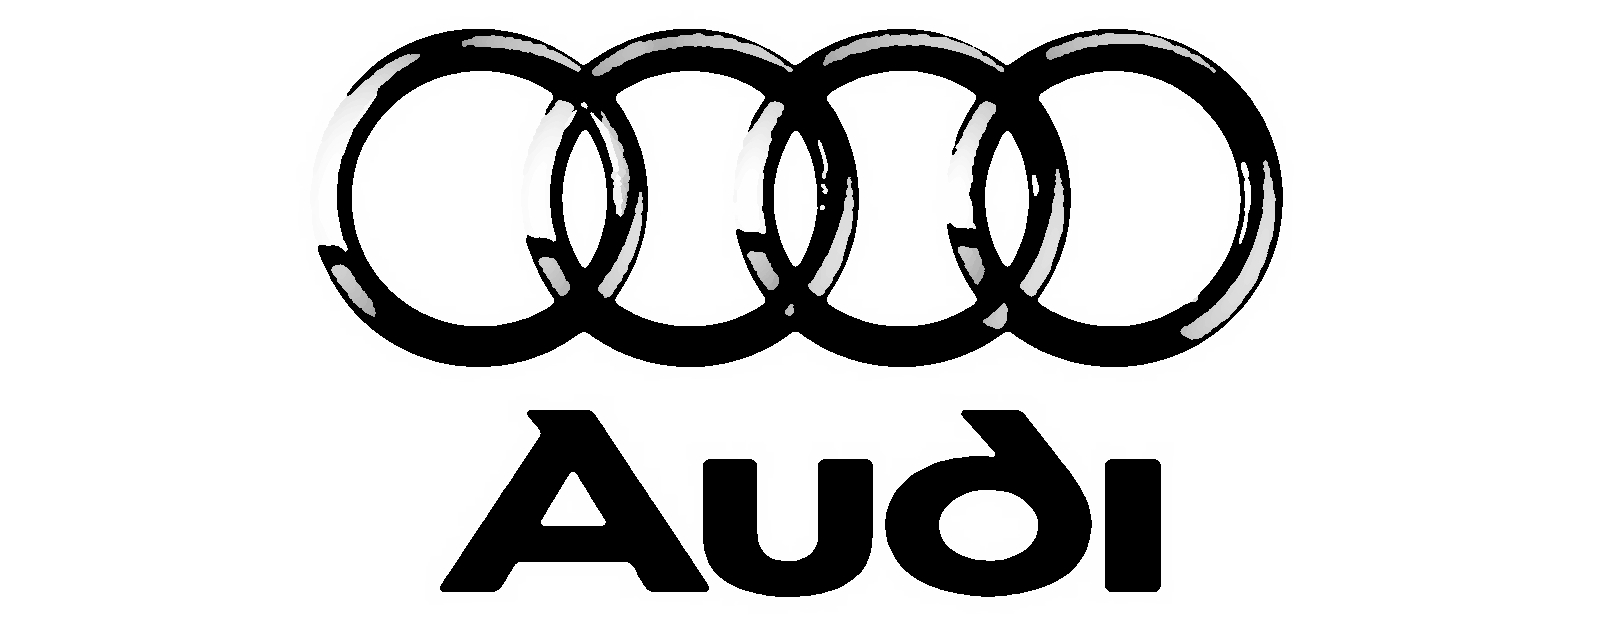 Figure 1.9: Audi® Logo